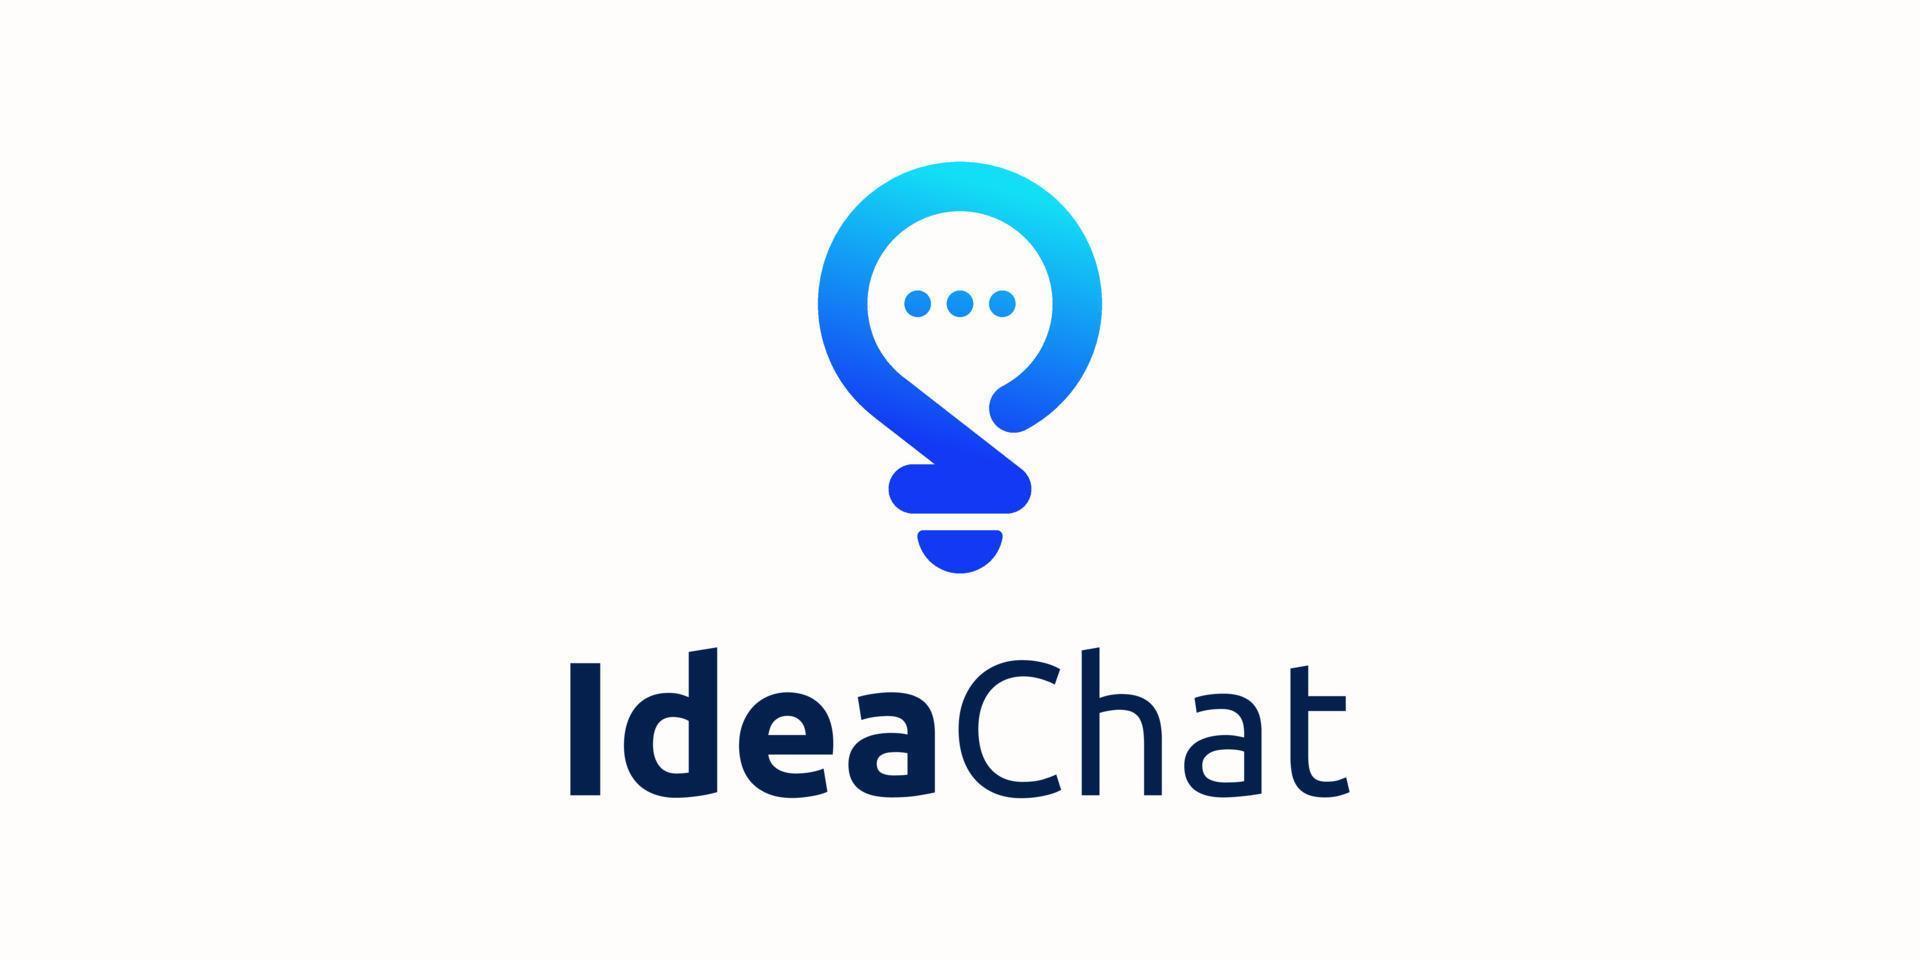 Glühbirne Chat Lampe Blase Chat Rede Rede Nachricht Idee Kommunikation Vektor Logo Design